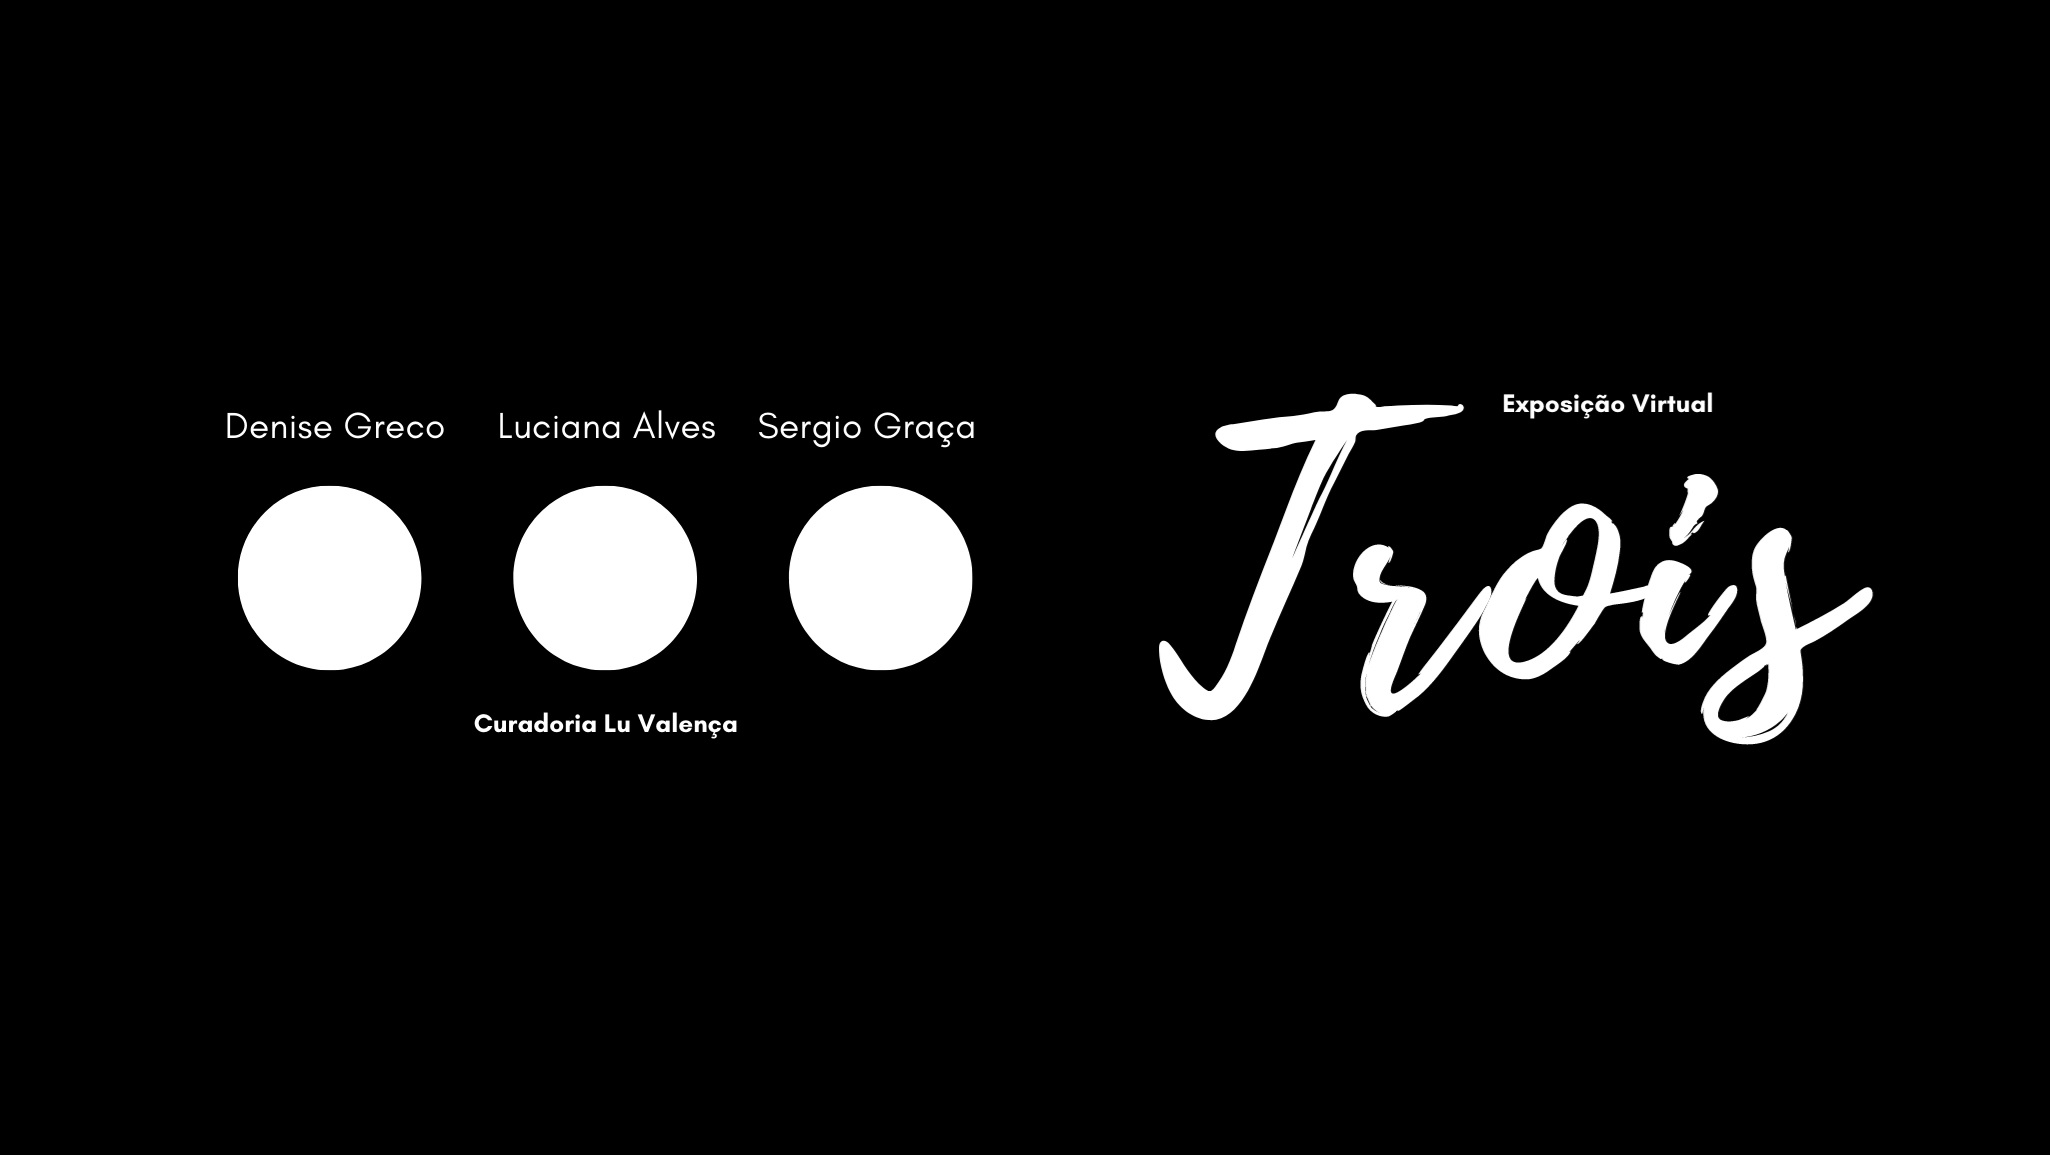 Exposição Virtual "Trois", Contemporâneos Escritório de Arte. Divulgação.